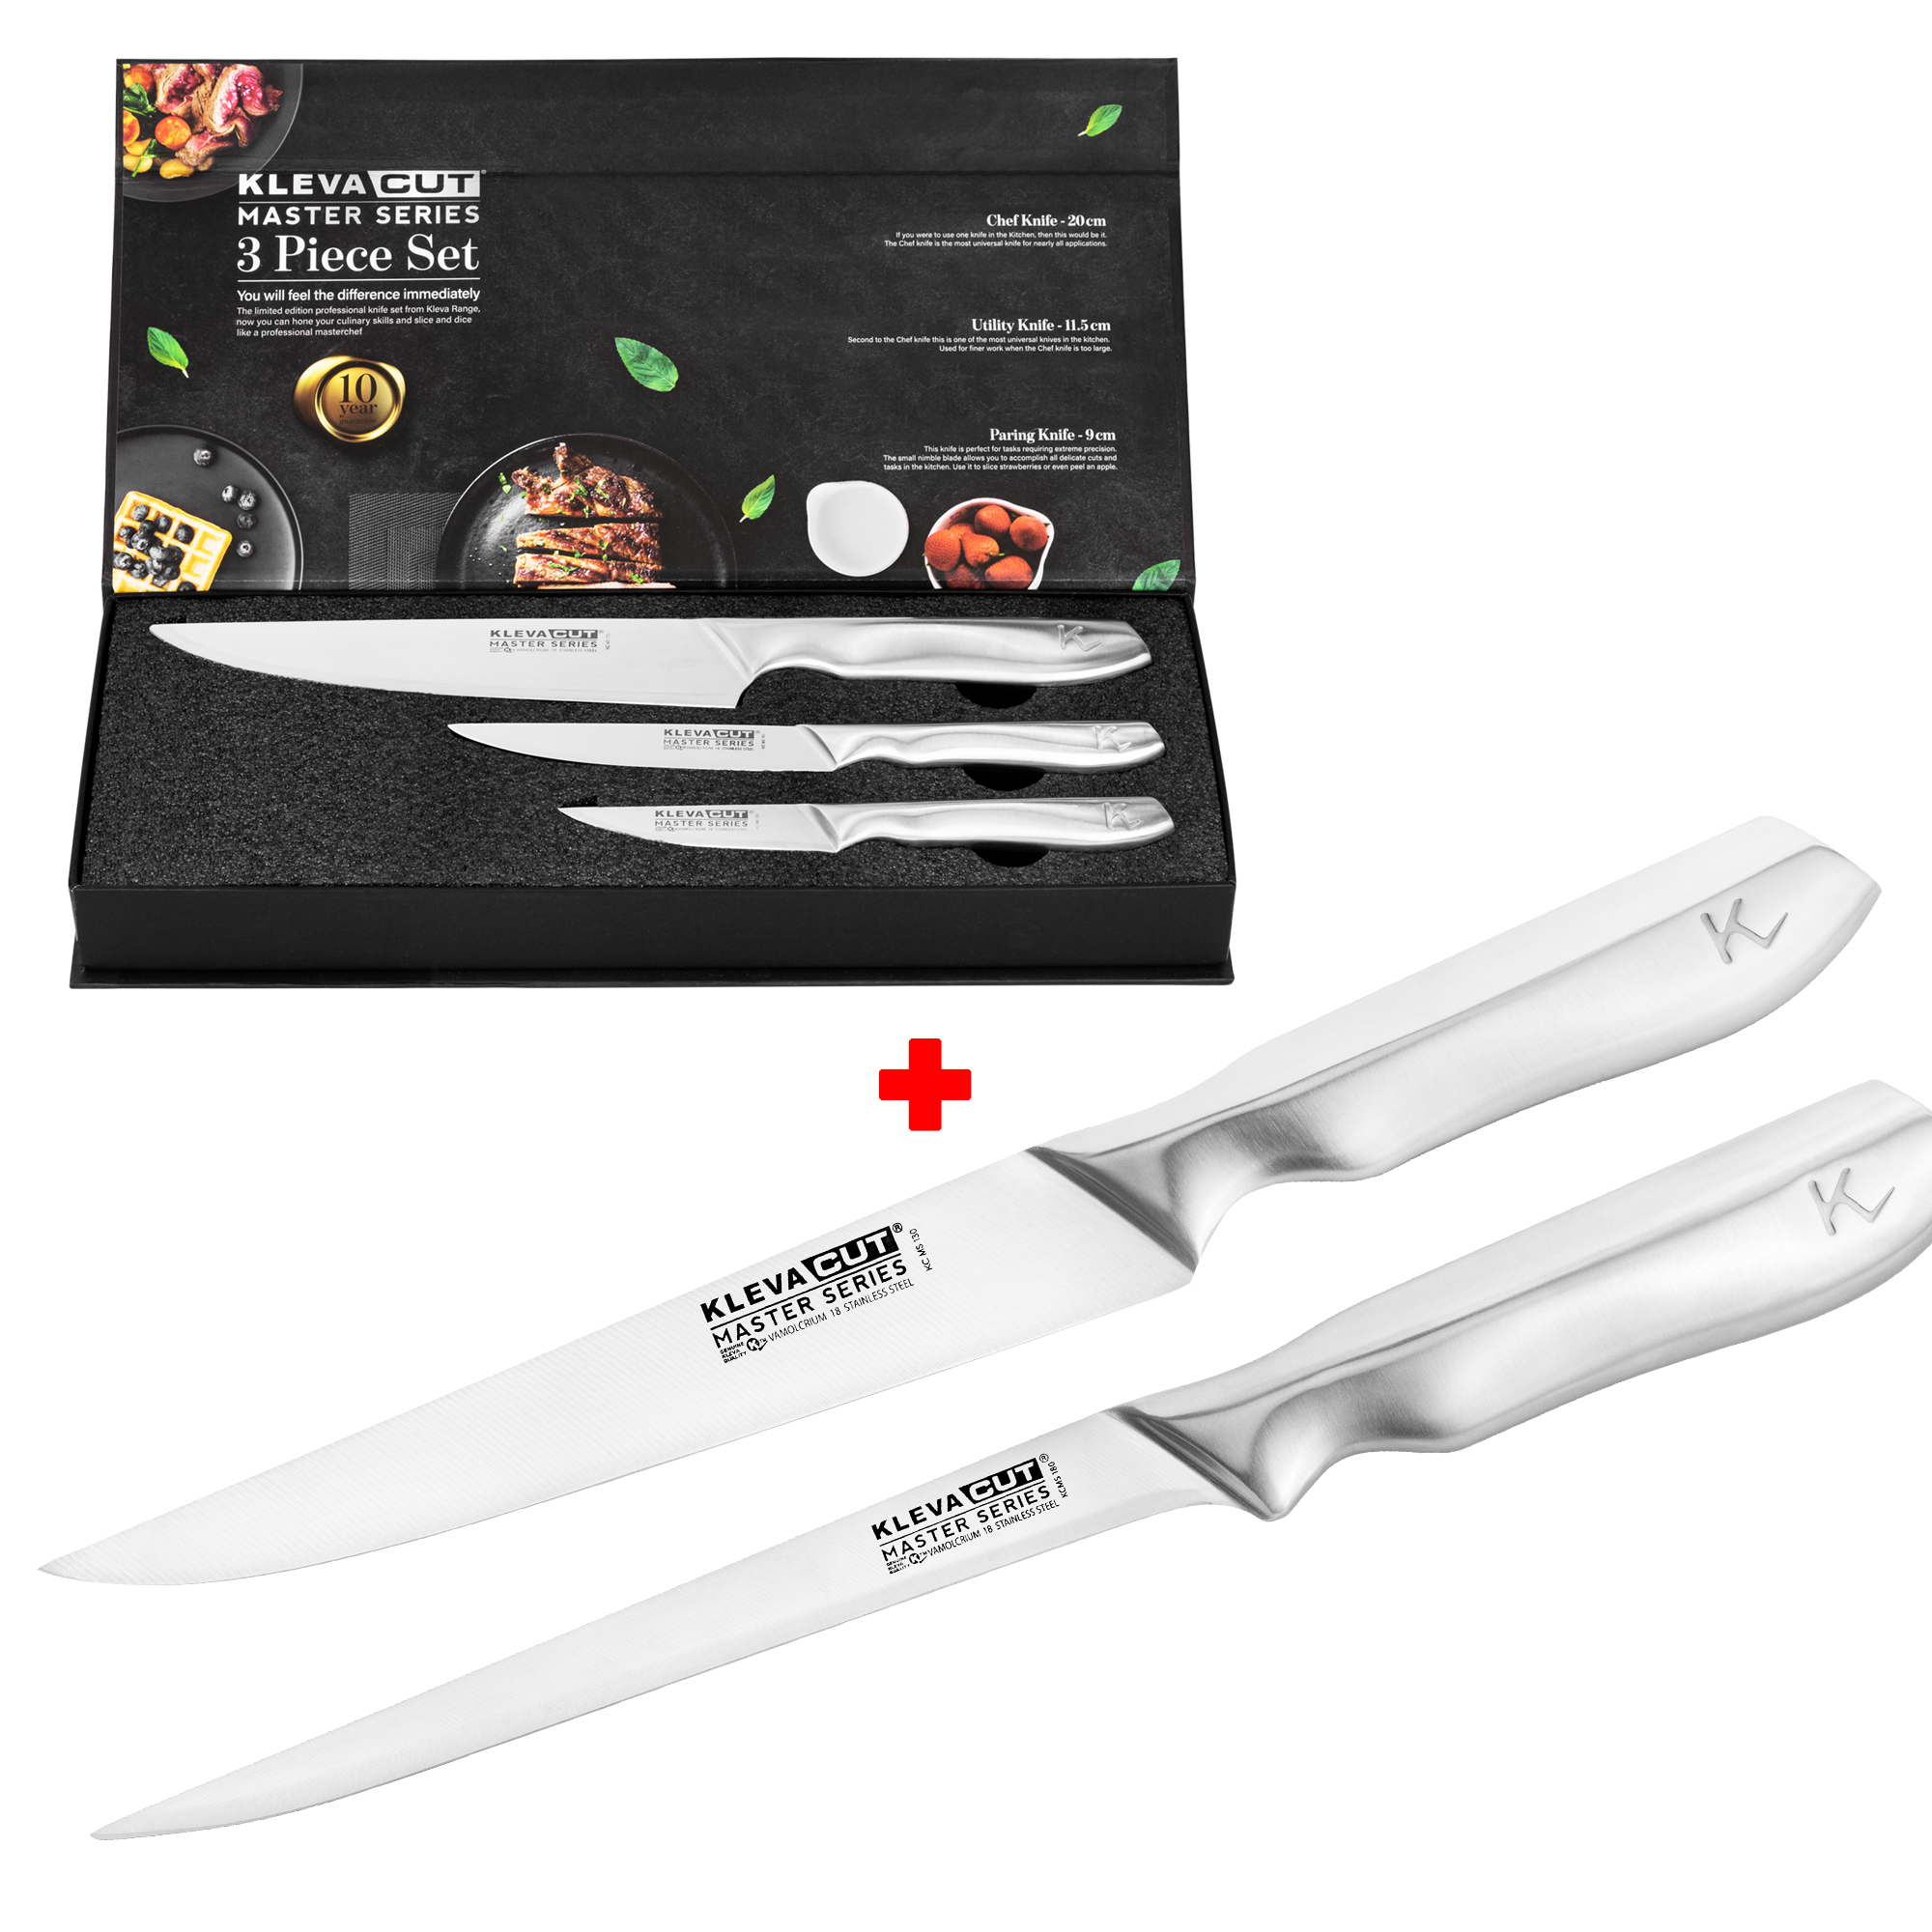 Upgrade to 5pc Knife Set With 21cm Fillet Knife + 20cm Slicer Knife